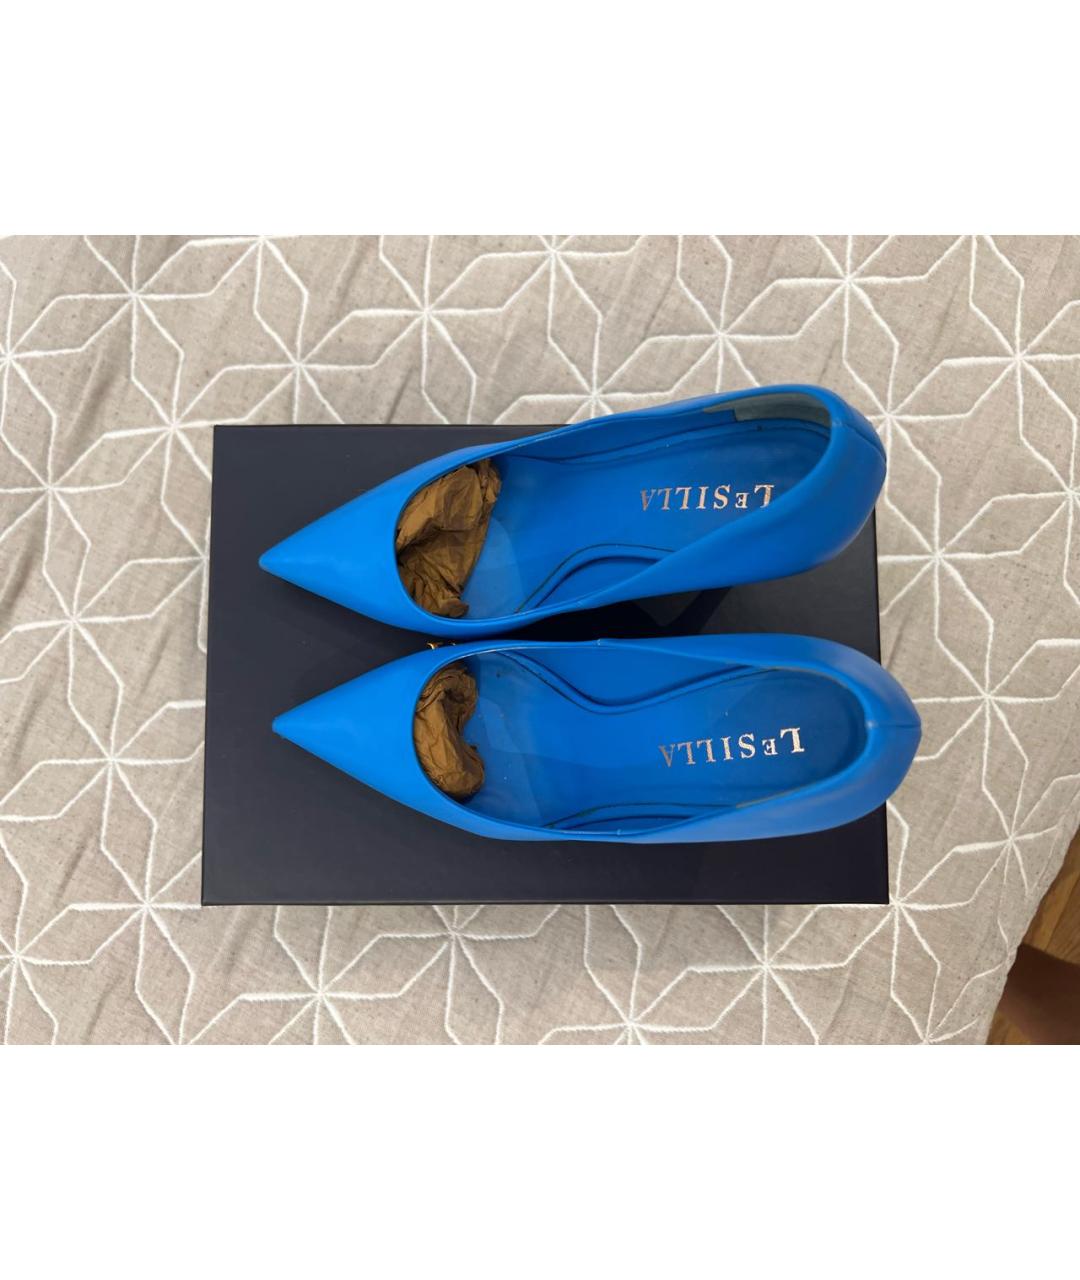 LE SILLA Синие кожаные туфли, фото 3